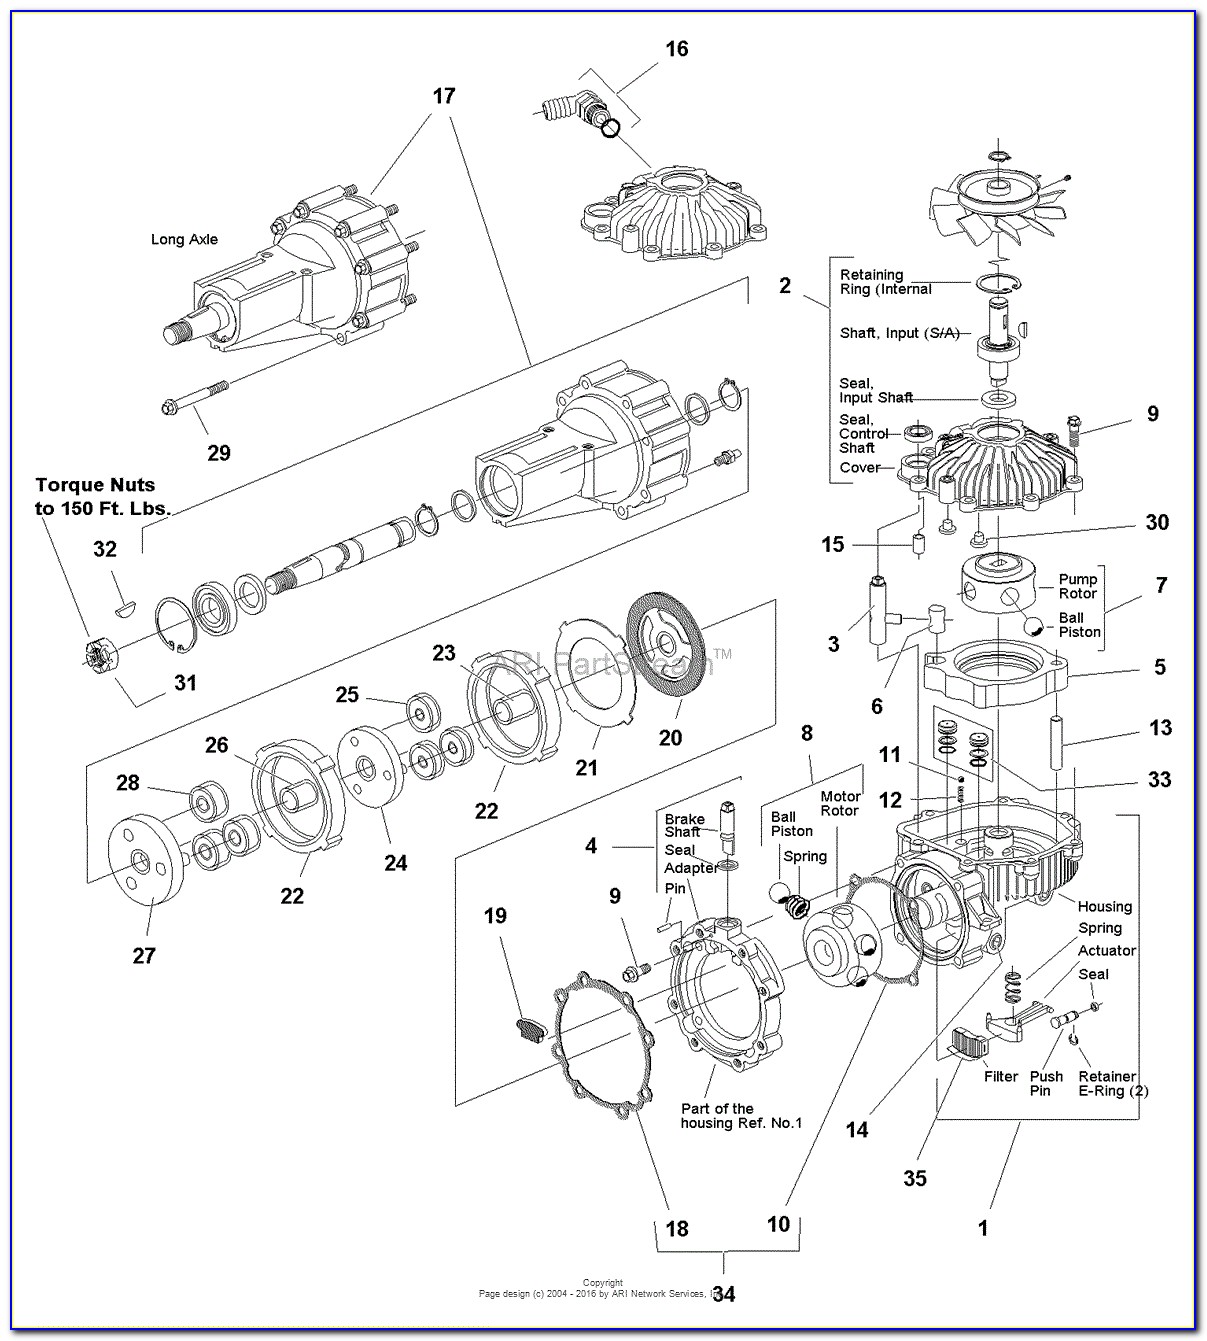 Eaton Transmission Wiring Diagram